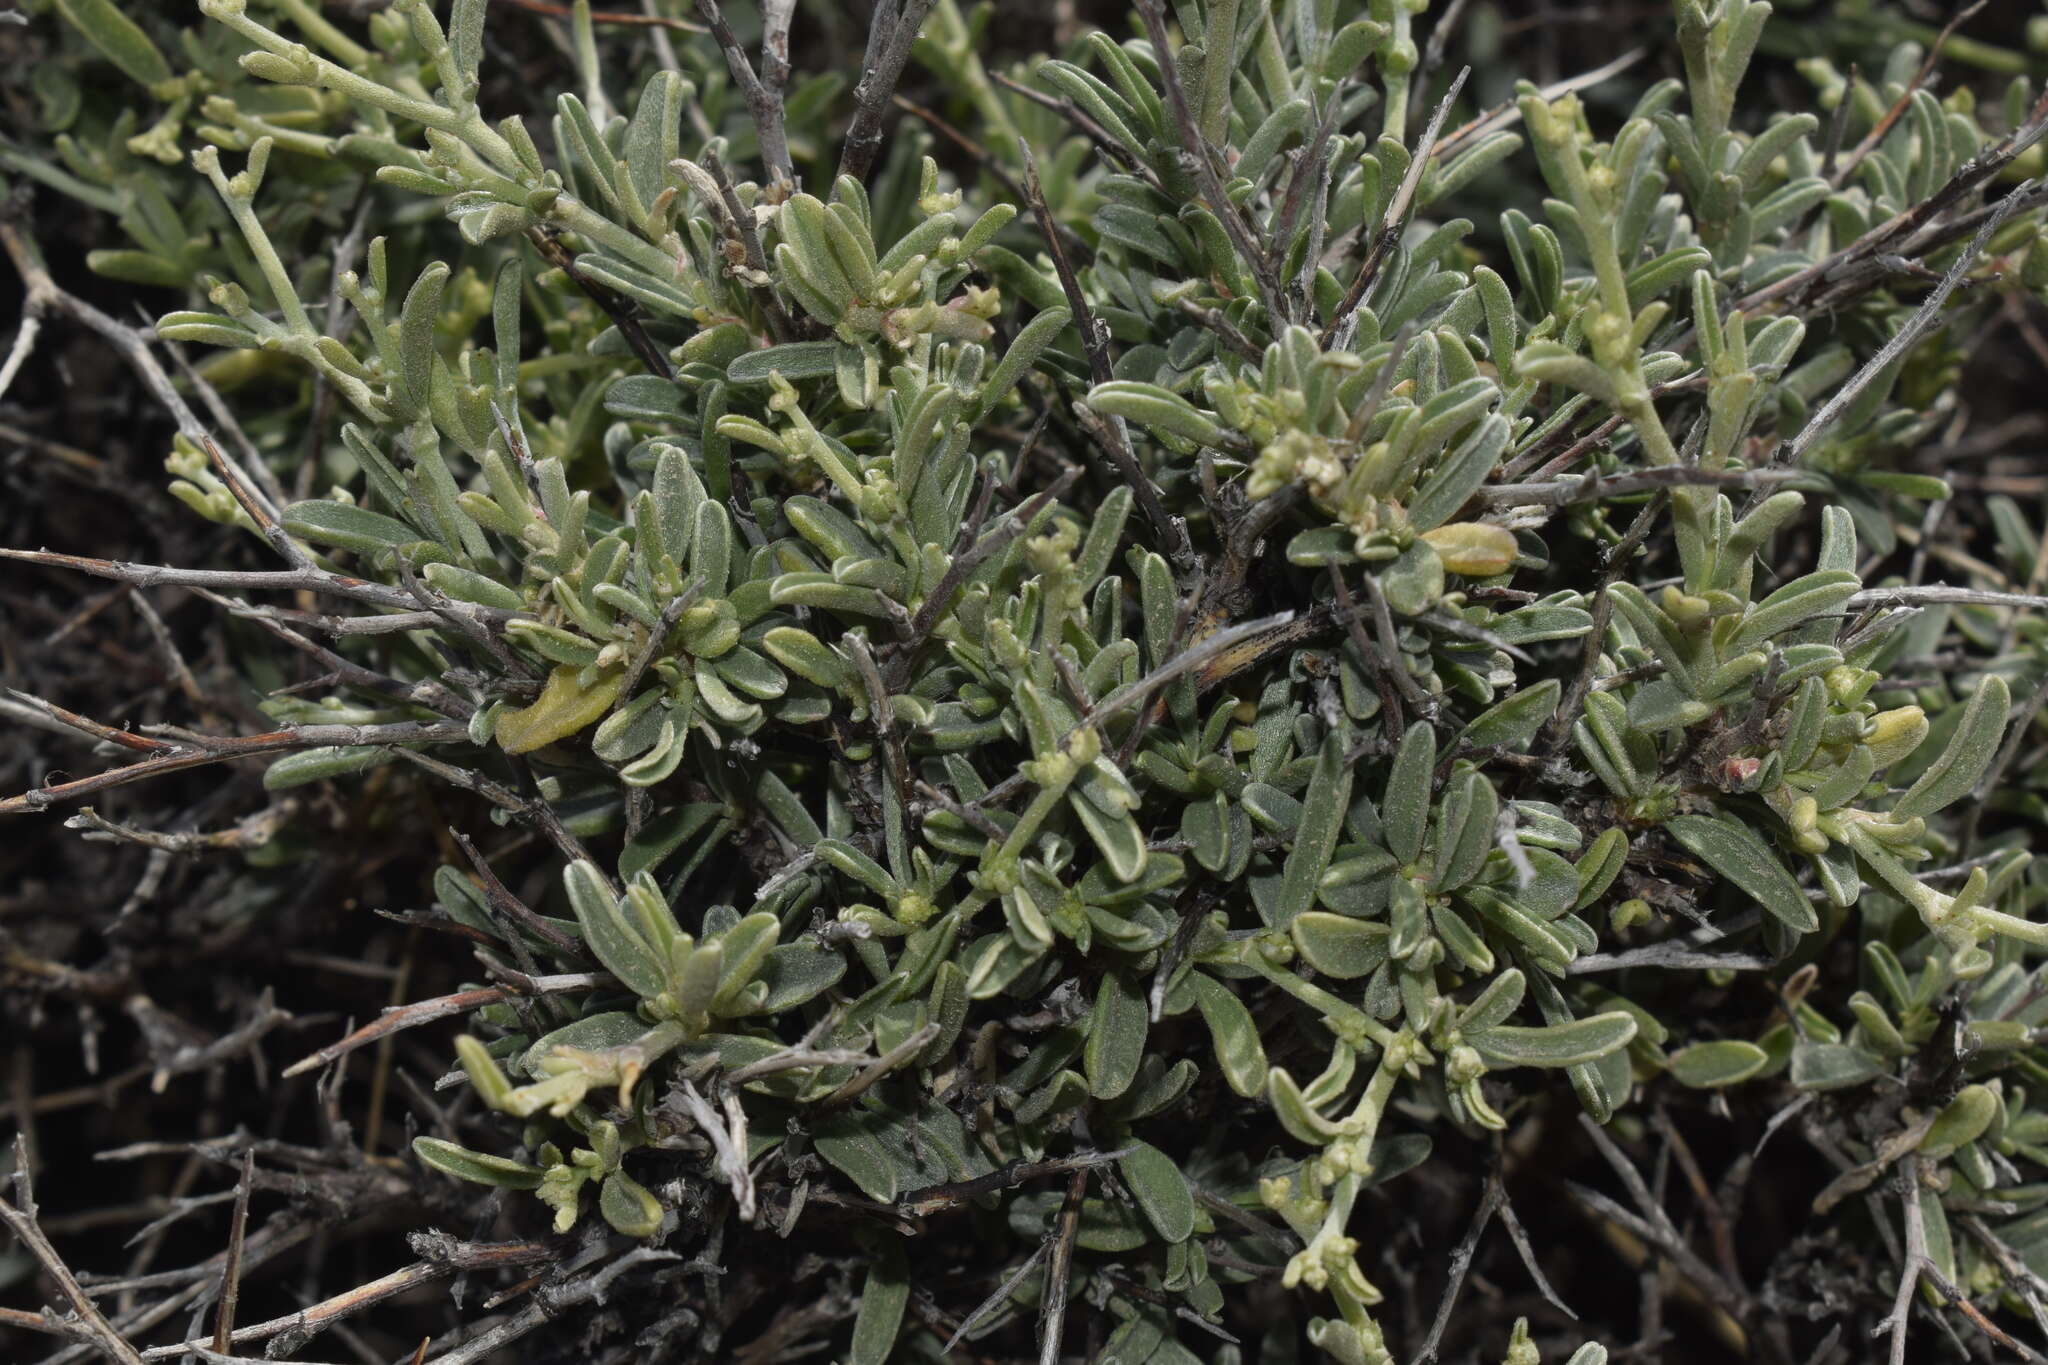 Image of <i>Anthyllis <i>hermanniae</i></i> subsp. hermanniae